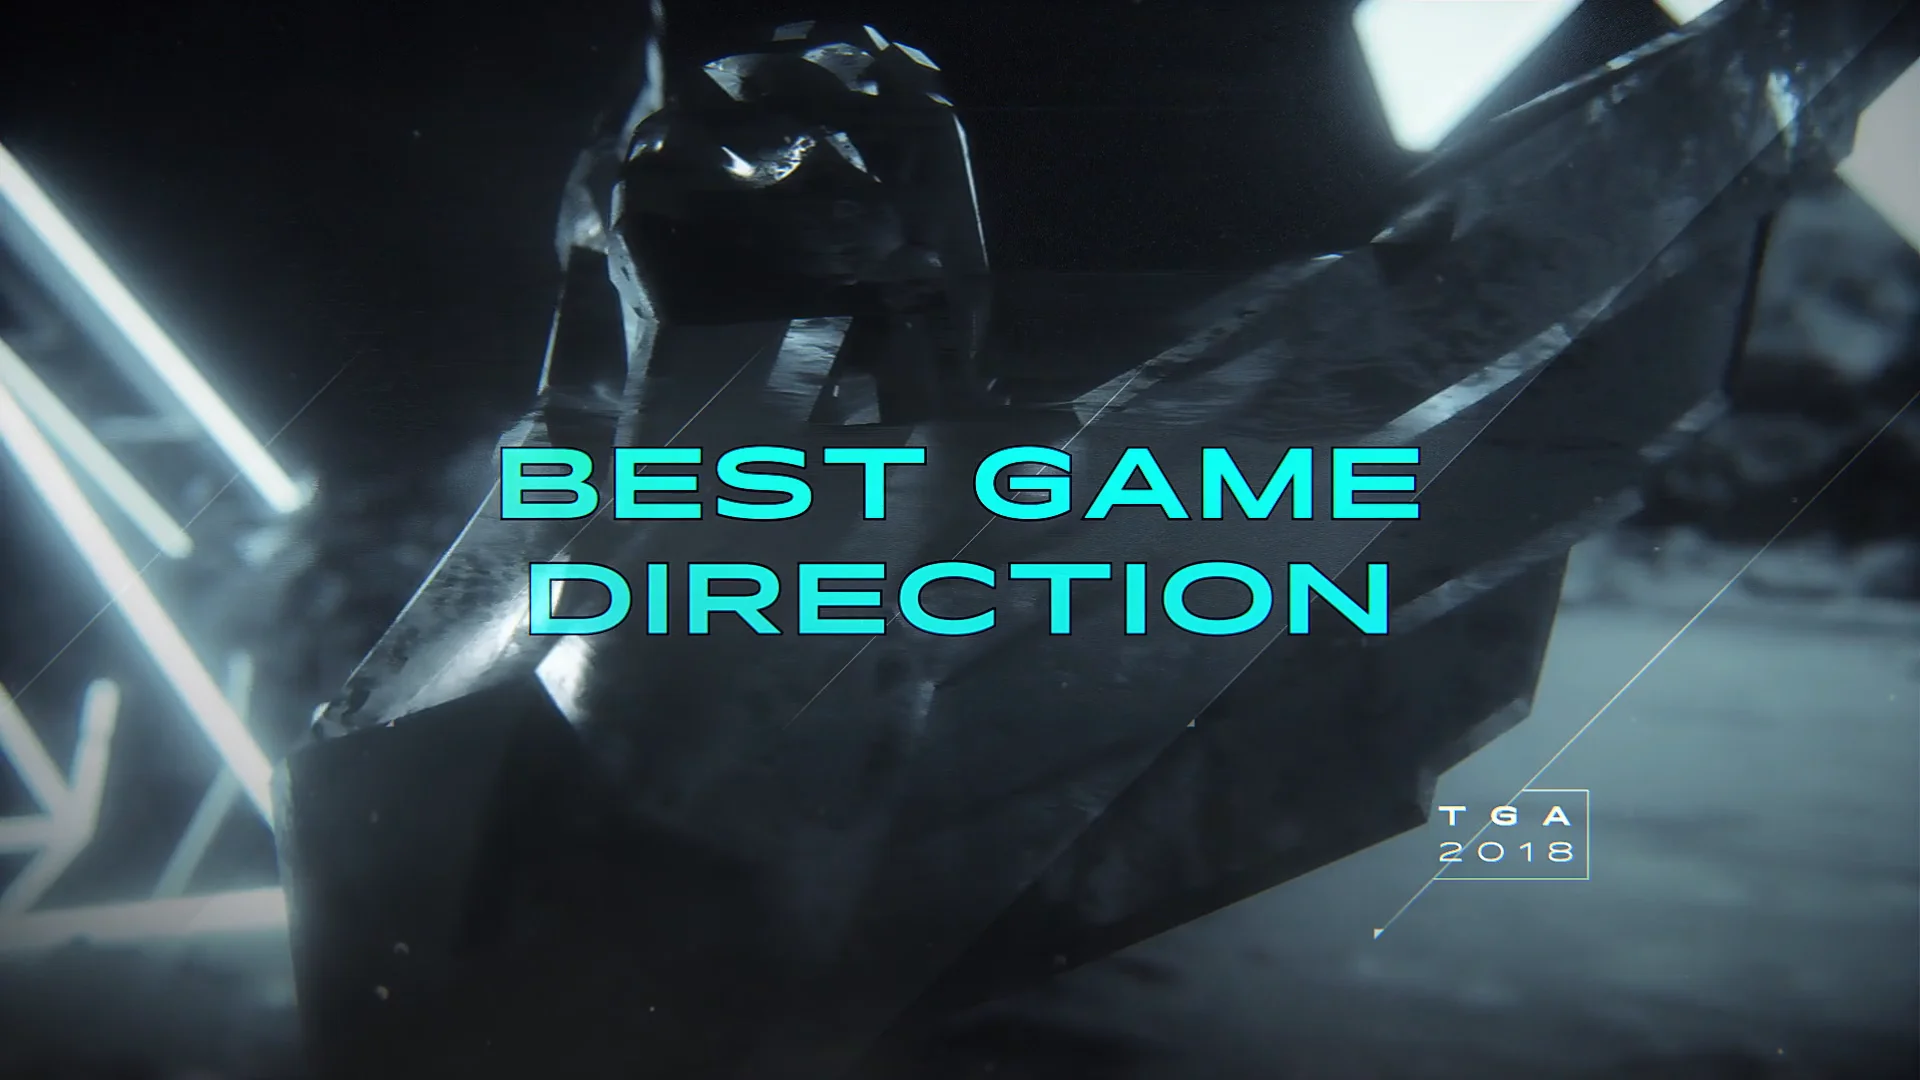 The Game Awards 2018 Promo on Vimeo